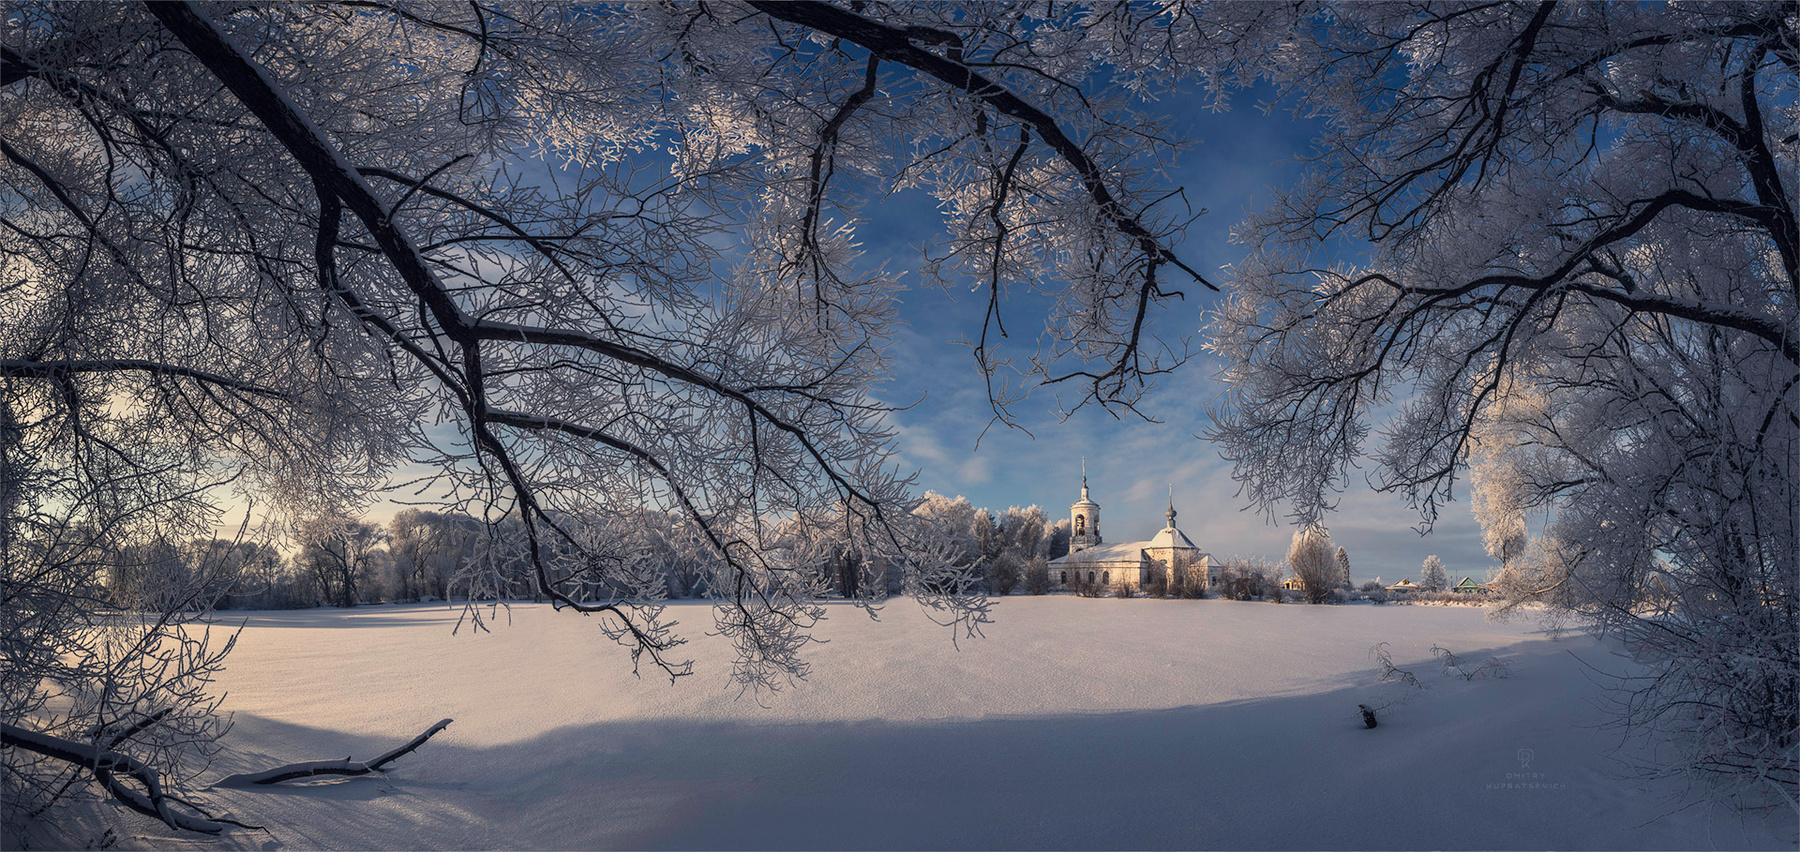 Зима пришла! суздаль зима церковь природа снег мороз